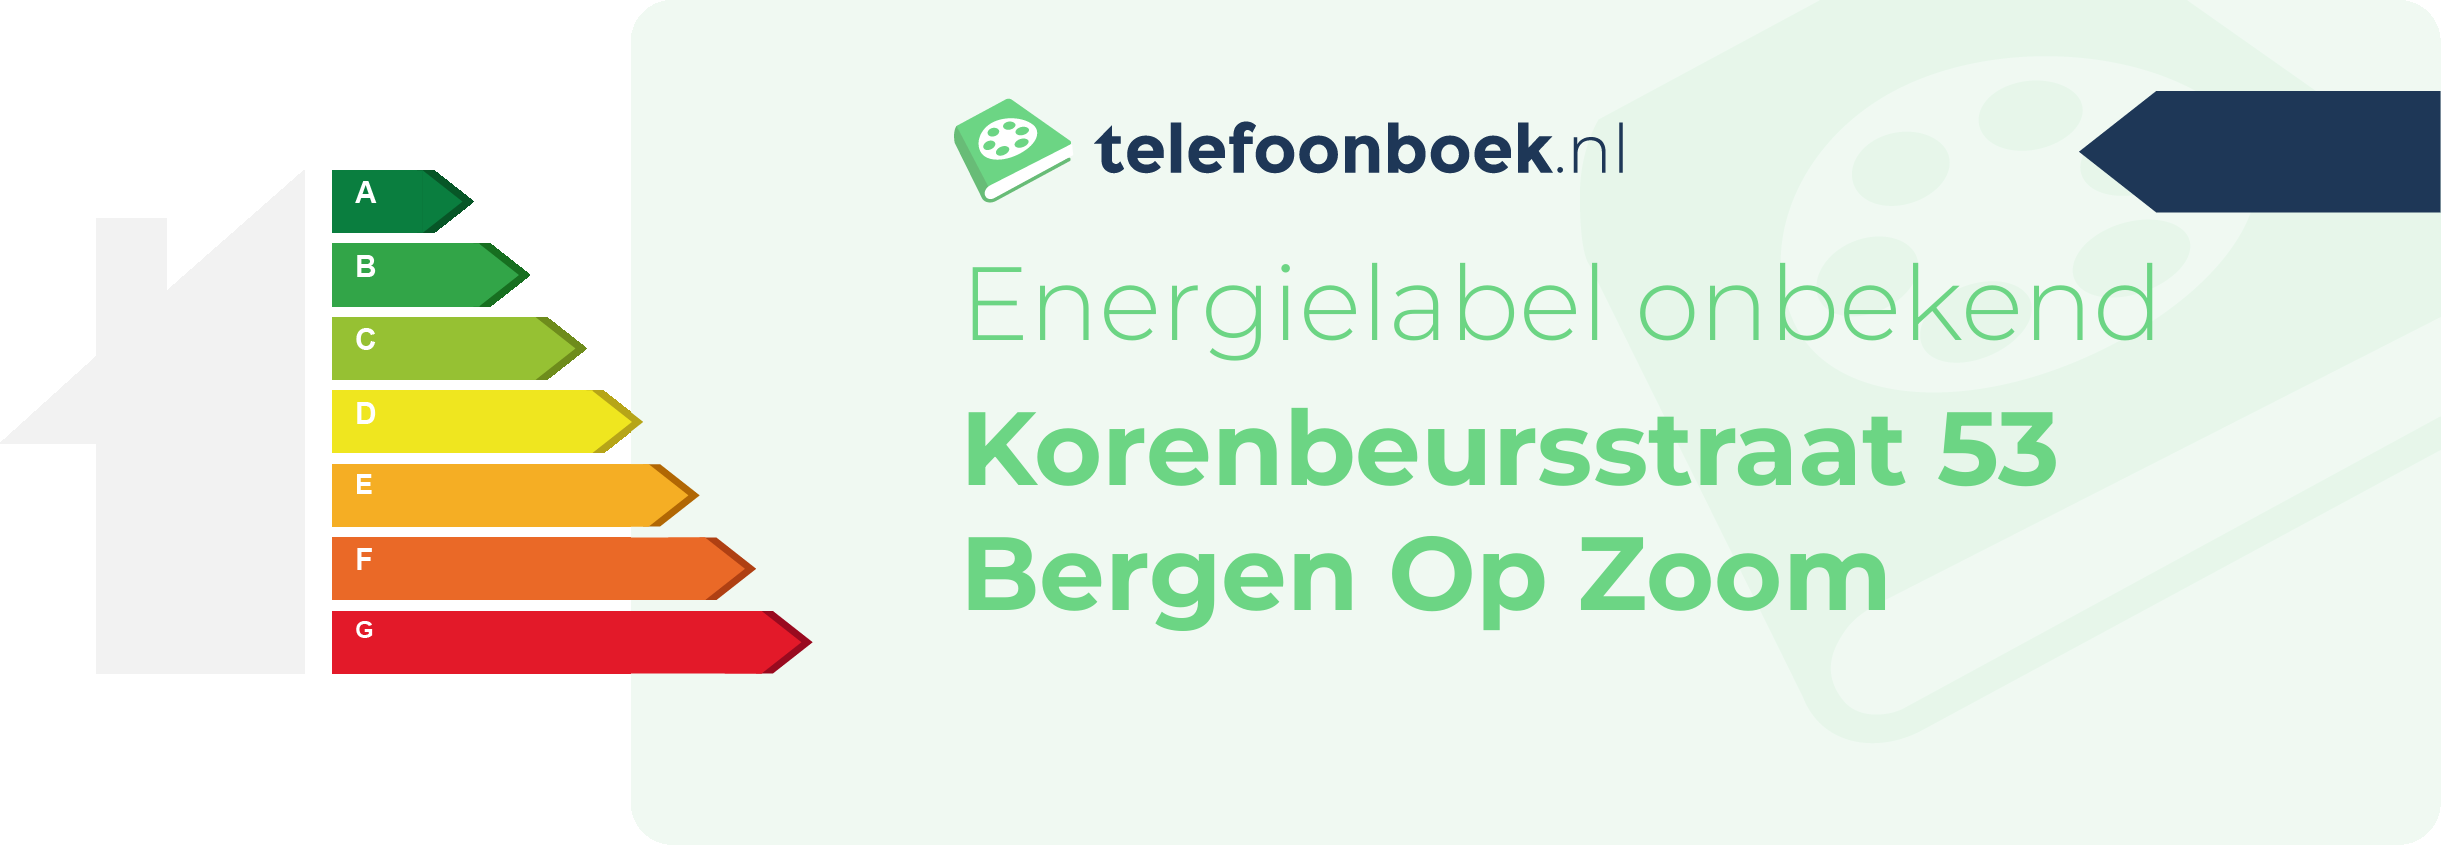 Energielabel Korenbeursstraat 53 Bergen Op Zoom